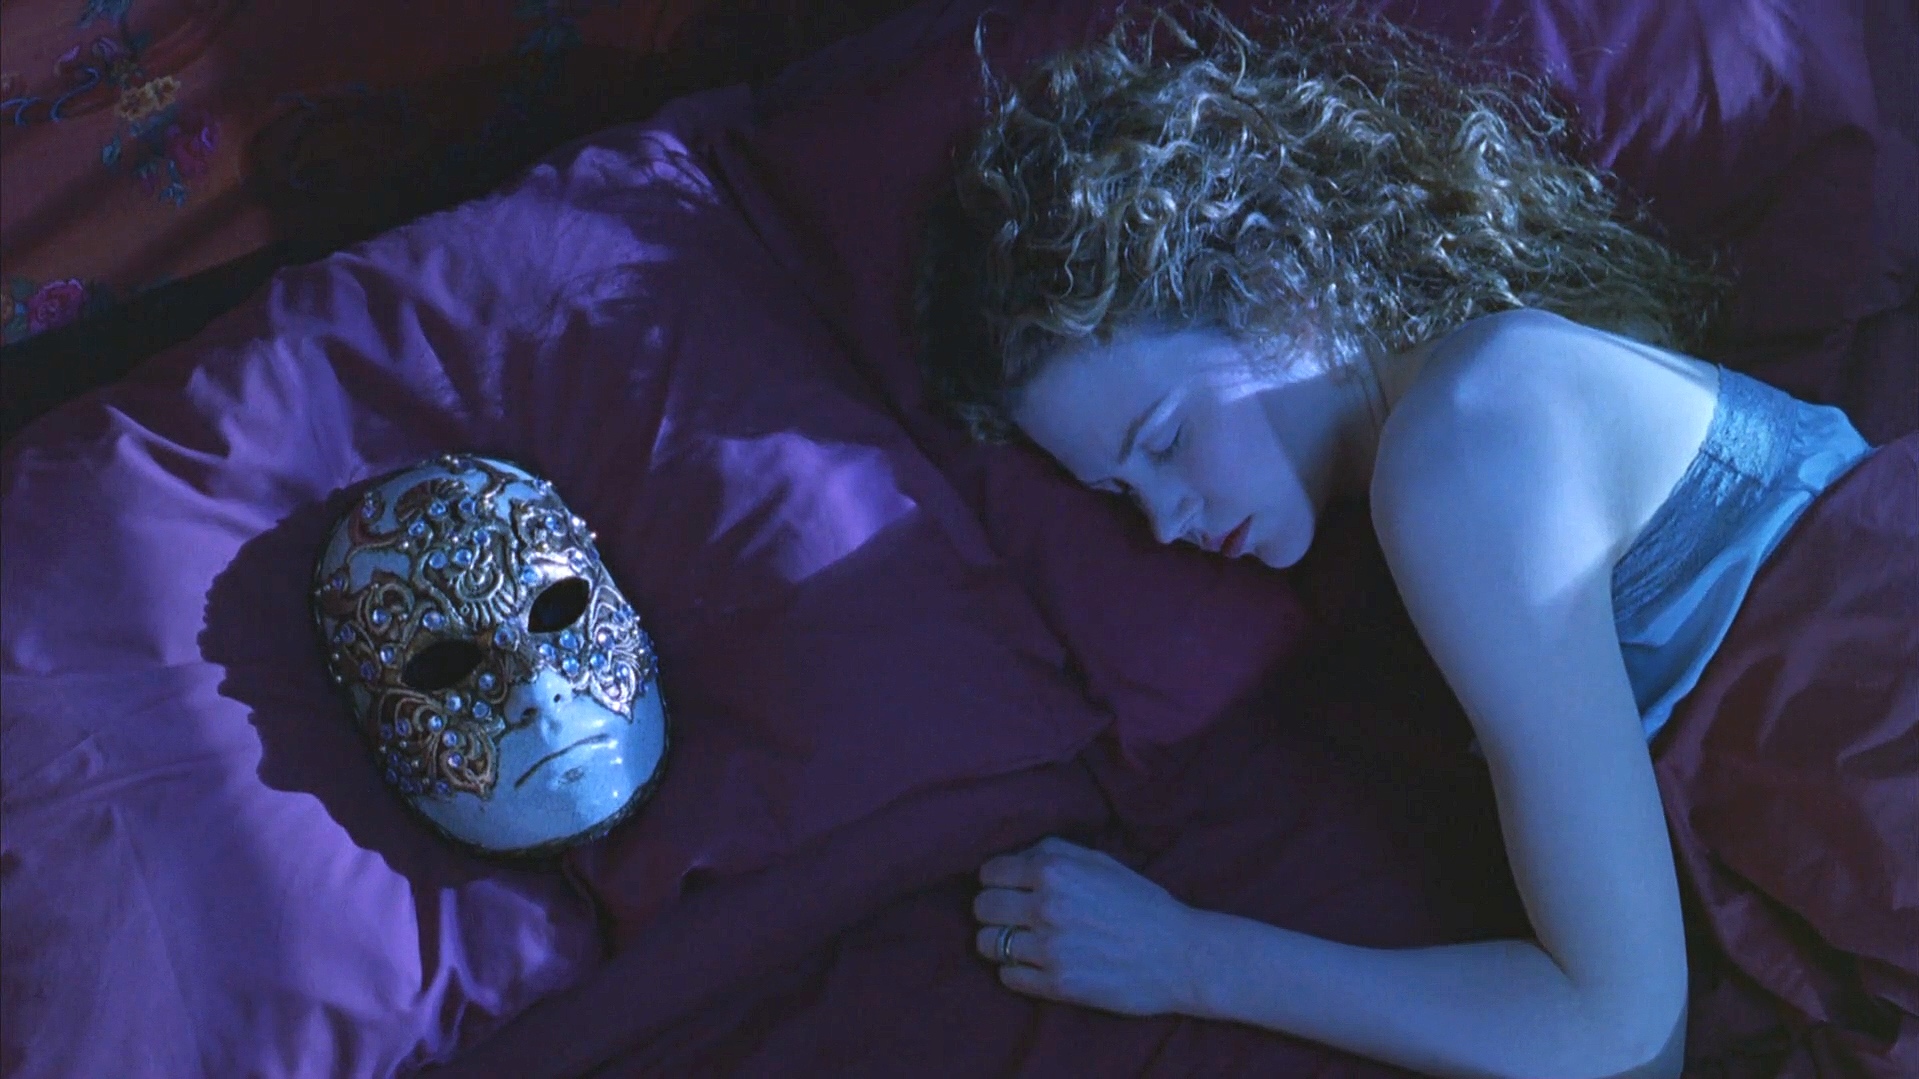 Nicole Kidman in bed met Venetiaans masker naast zich op hoofdkussen